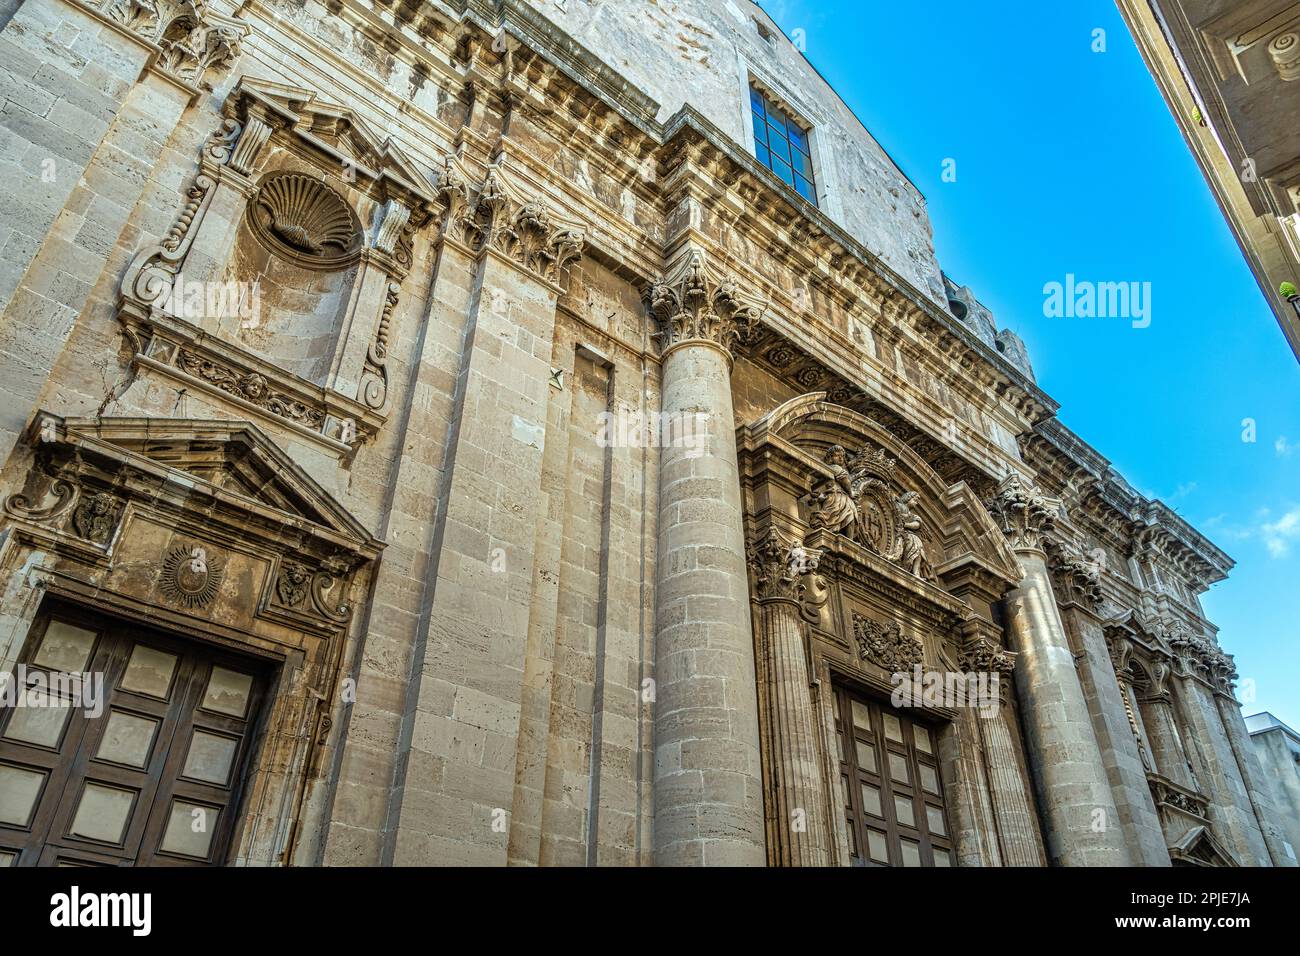 Die Kirche des Jesuitenkollegiums hat eine wunderschöne barocke Fassade, die in zwei Reihen unterteilt ist. Syrakus, Sizilien, Italien, Europa Stockfoto